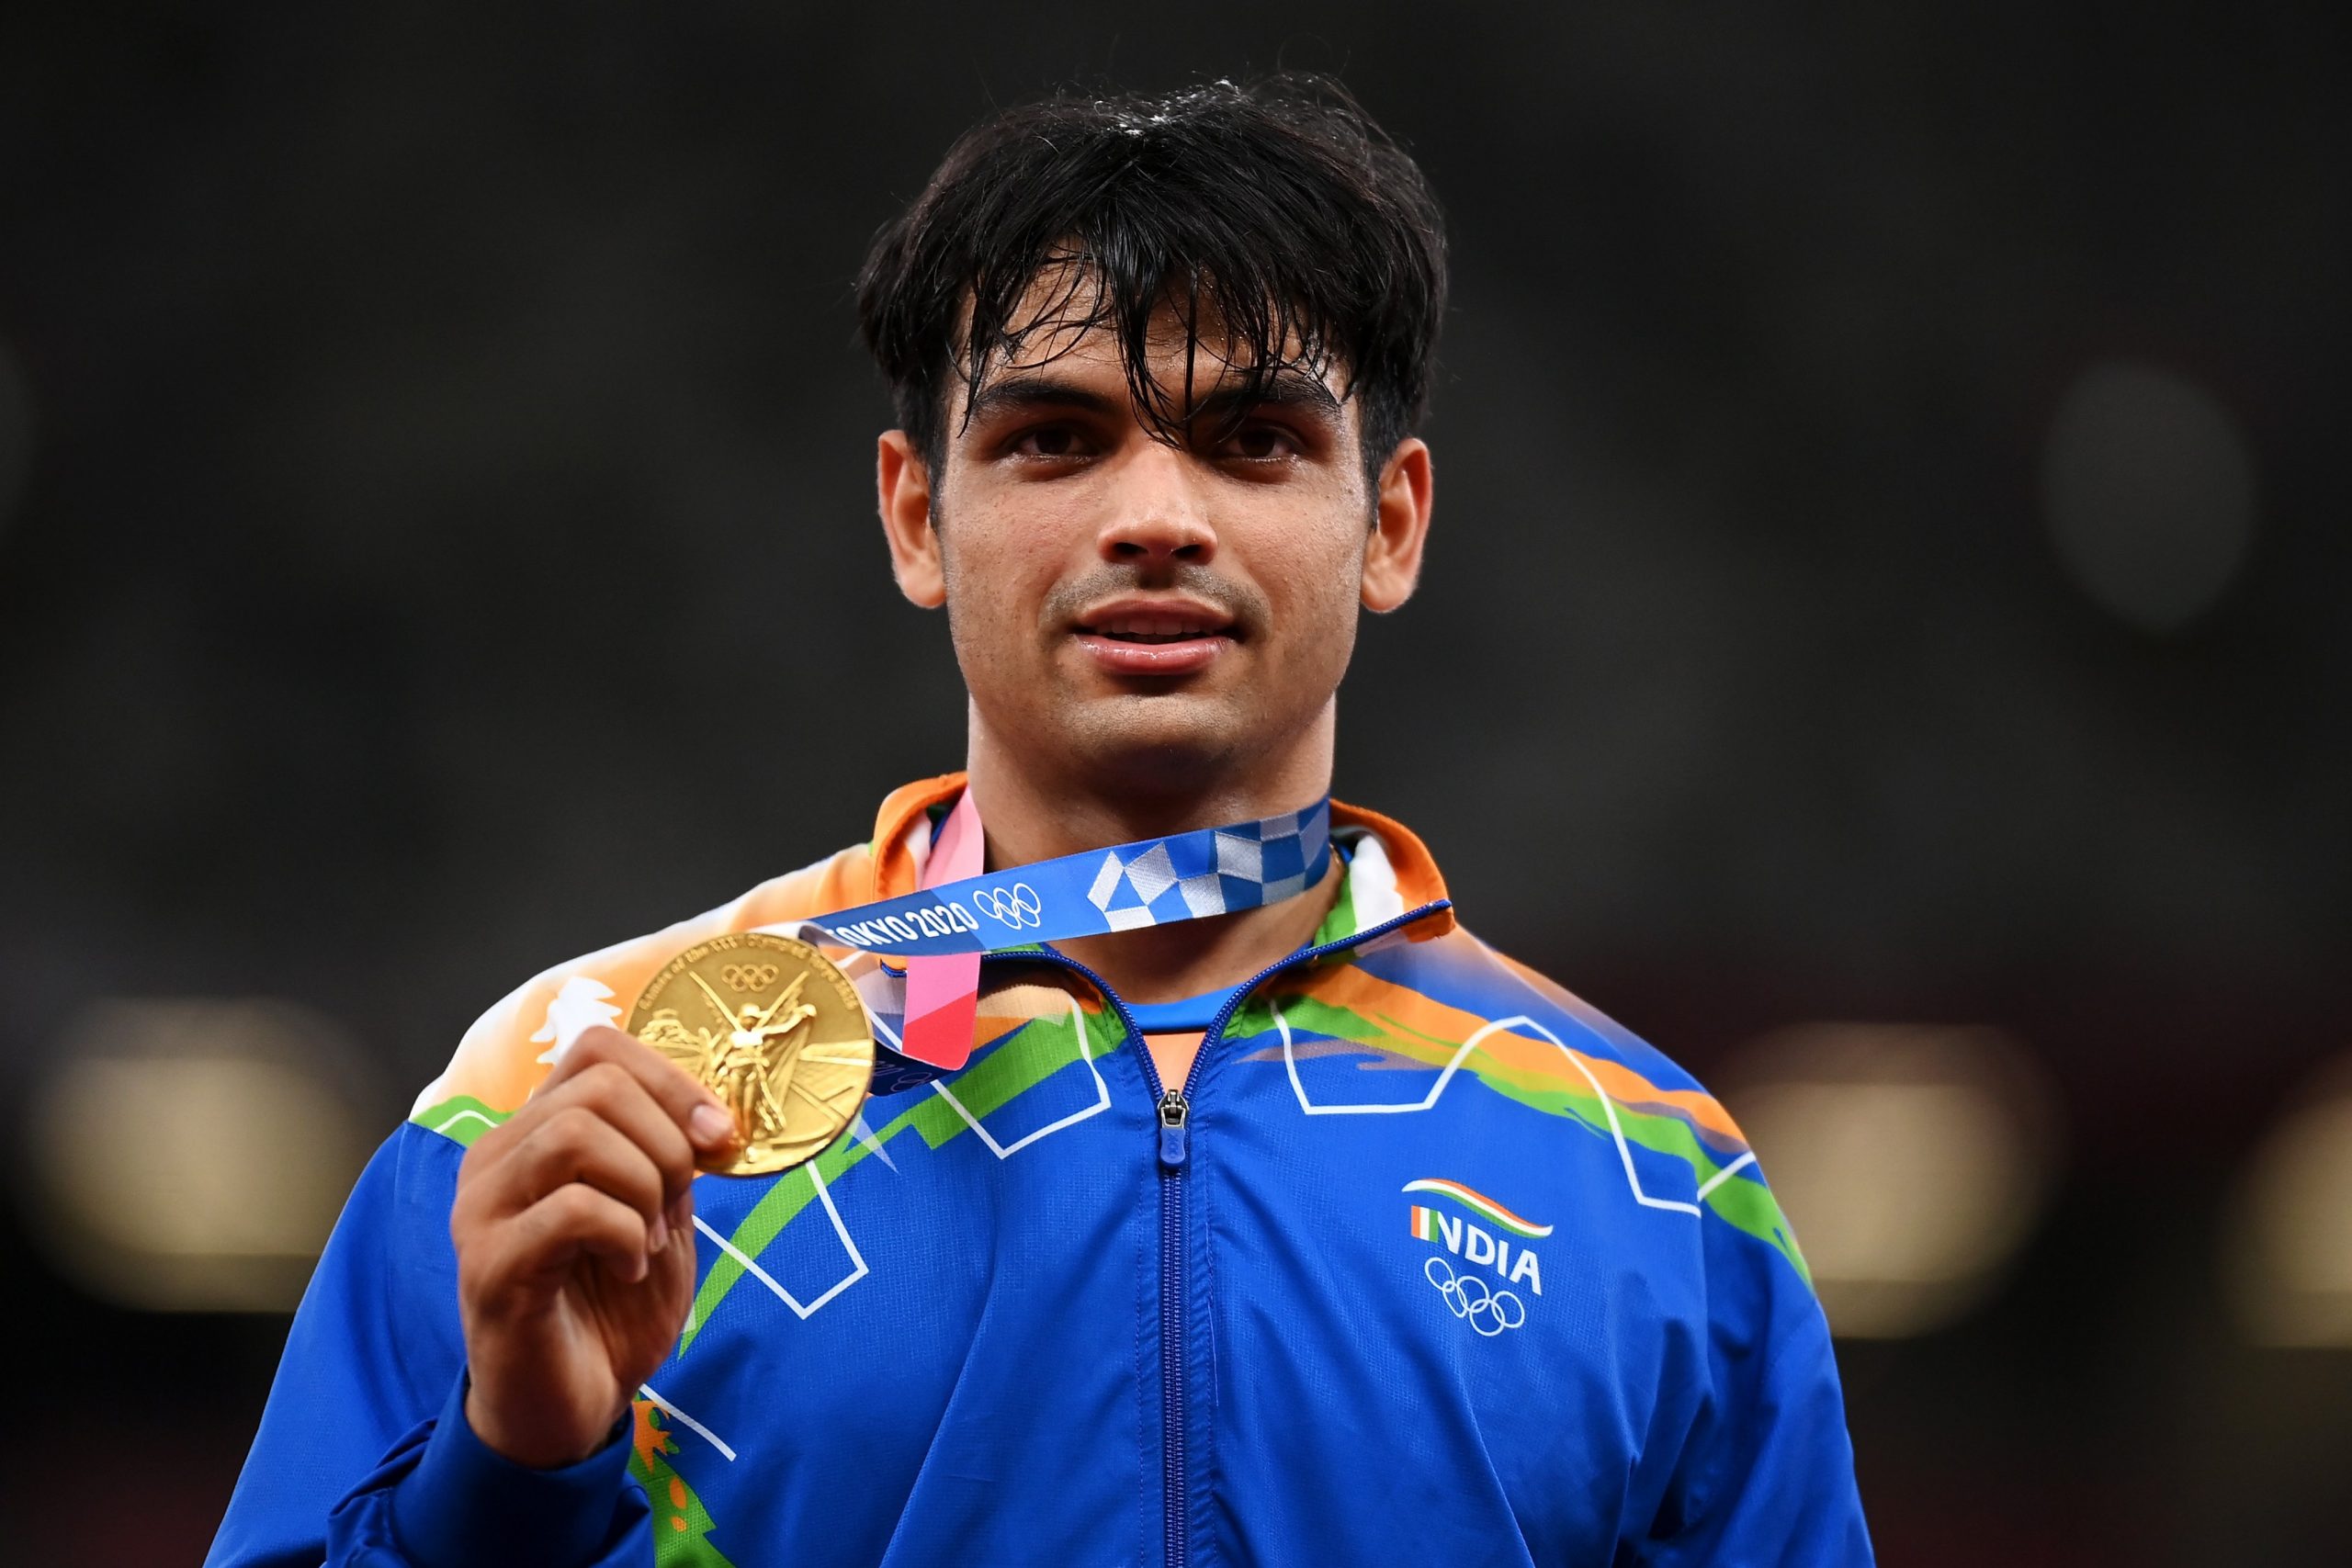 Índia vence primeira medalha de hóquei em campo em 41 anos - Renascença